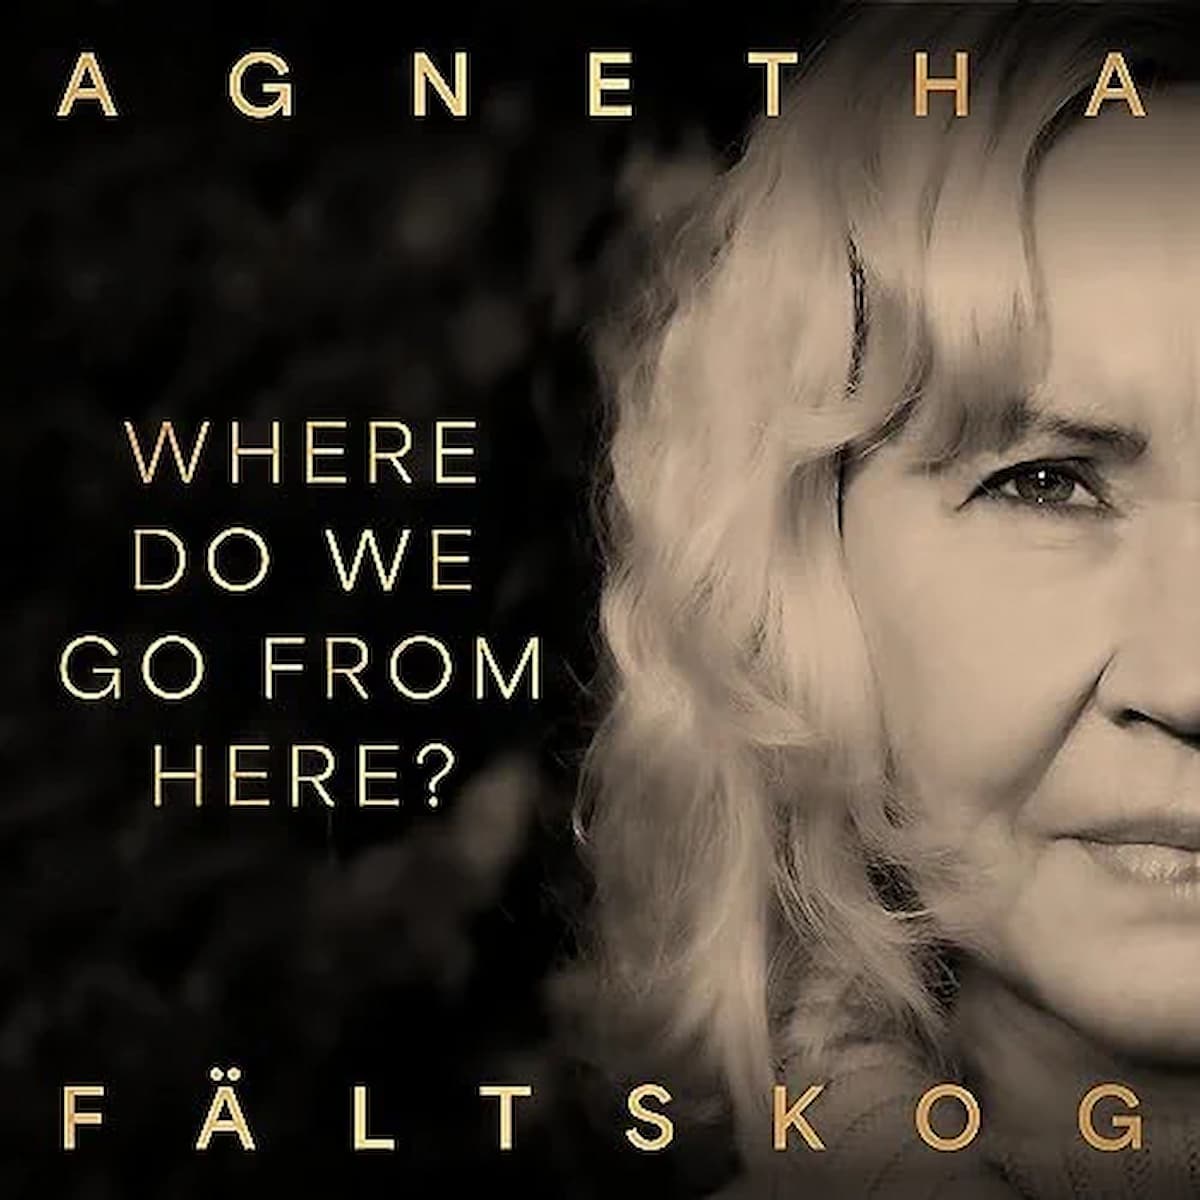 Agnetha Fältskog (Abba) Single veröffentlicht, Album “A+” angekündigt